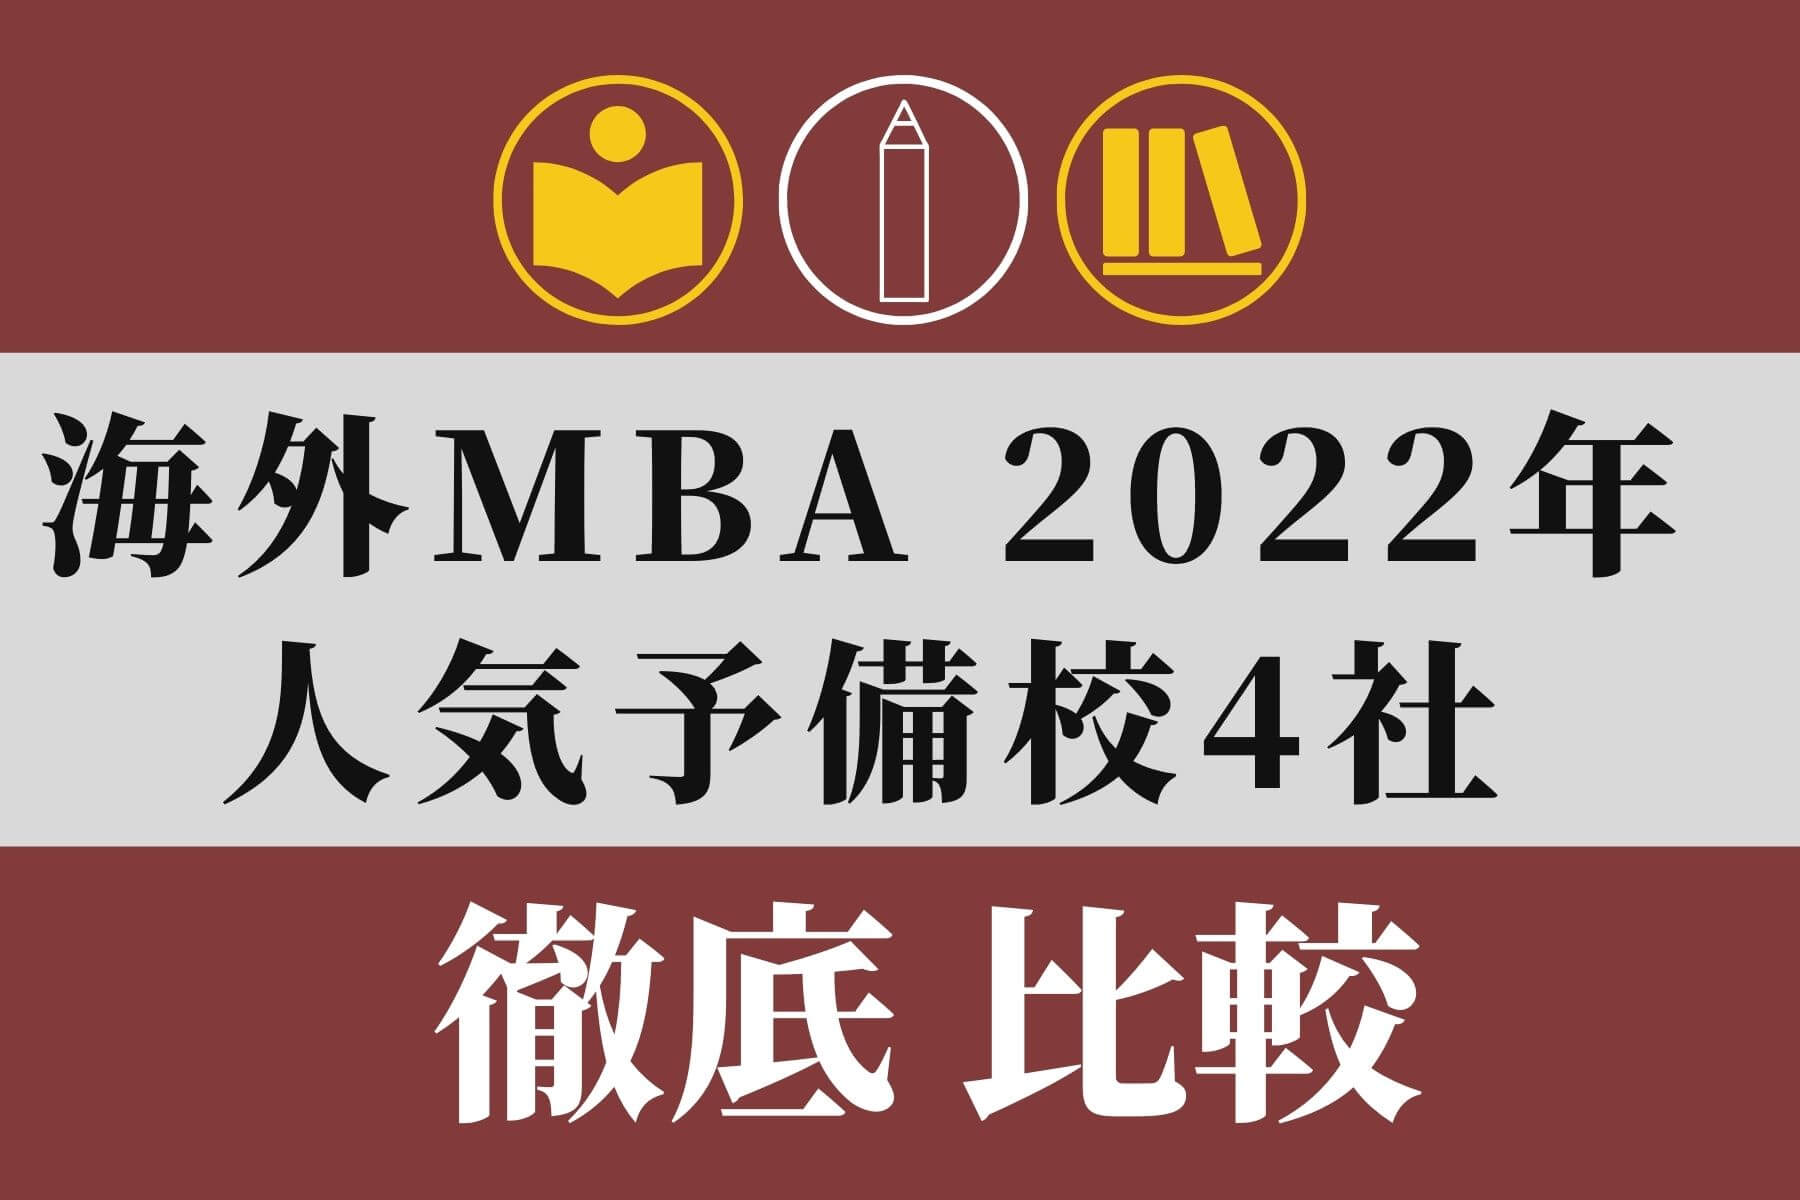 海外MBA 2022年 人気予備校・塾・スクール4社